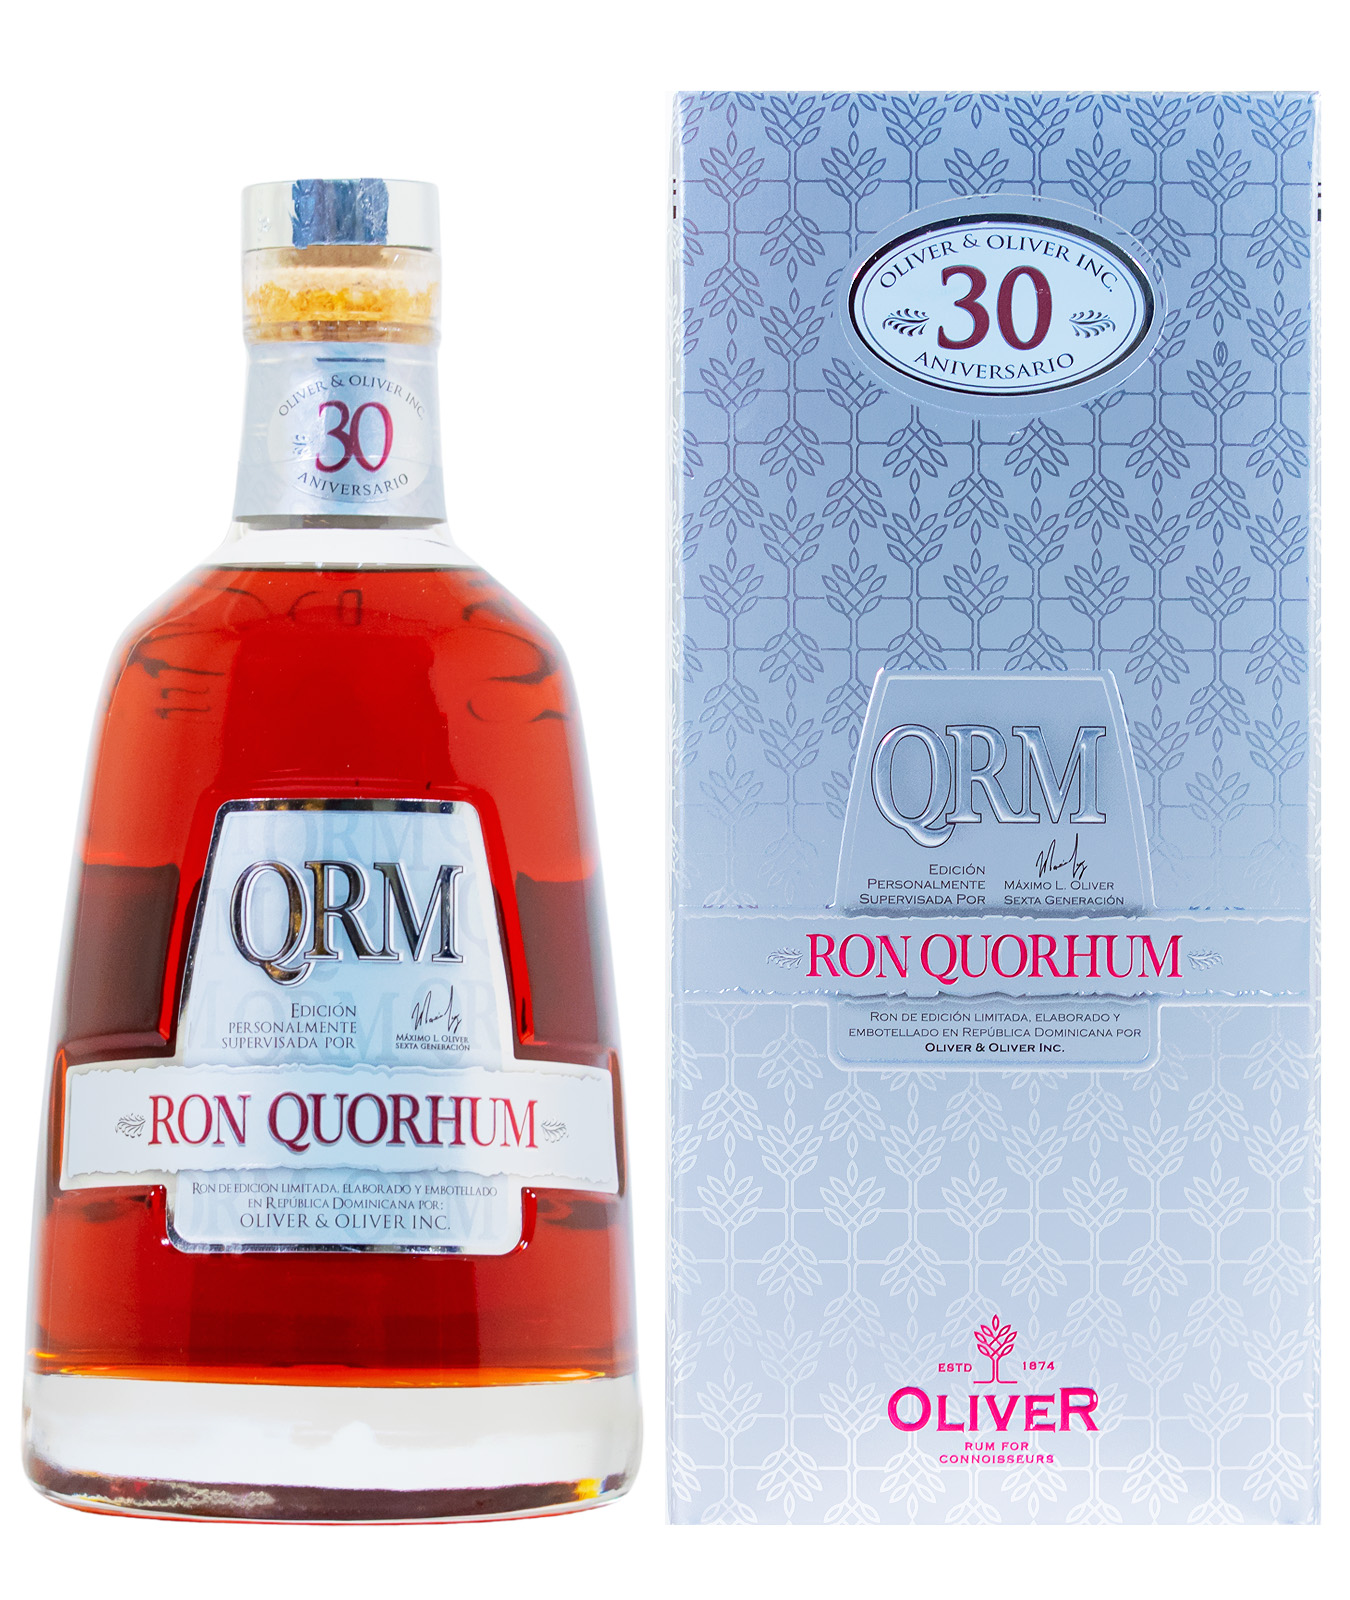 Ron Quorhum 30 Jahre Solera Rum - 0,7L 40% vol